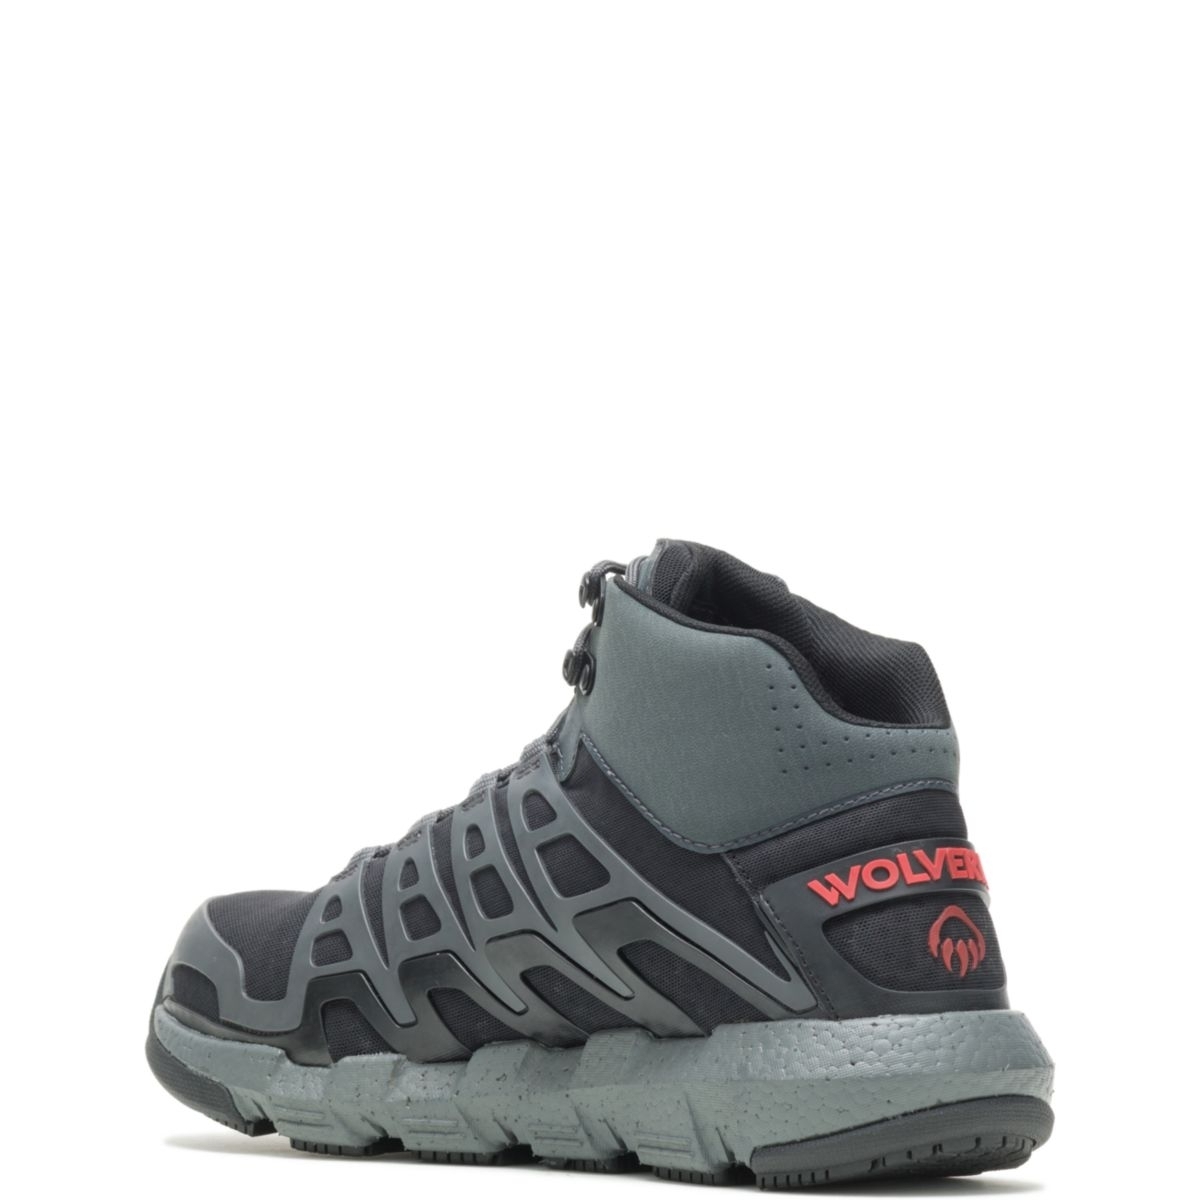 WOLVERINE Men's Rev Vent UltraSpringâ¢ DuraShocksÂ® CarbonMAXÂ® Composite Toe Work Boot Charcoal/Red - W211018 Charcoal/Red - Charcoal/Red, 10.